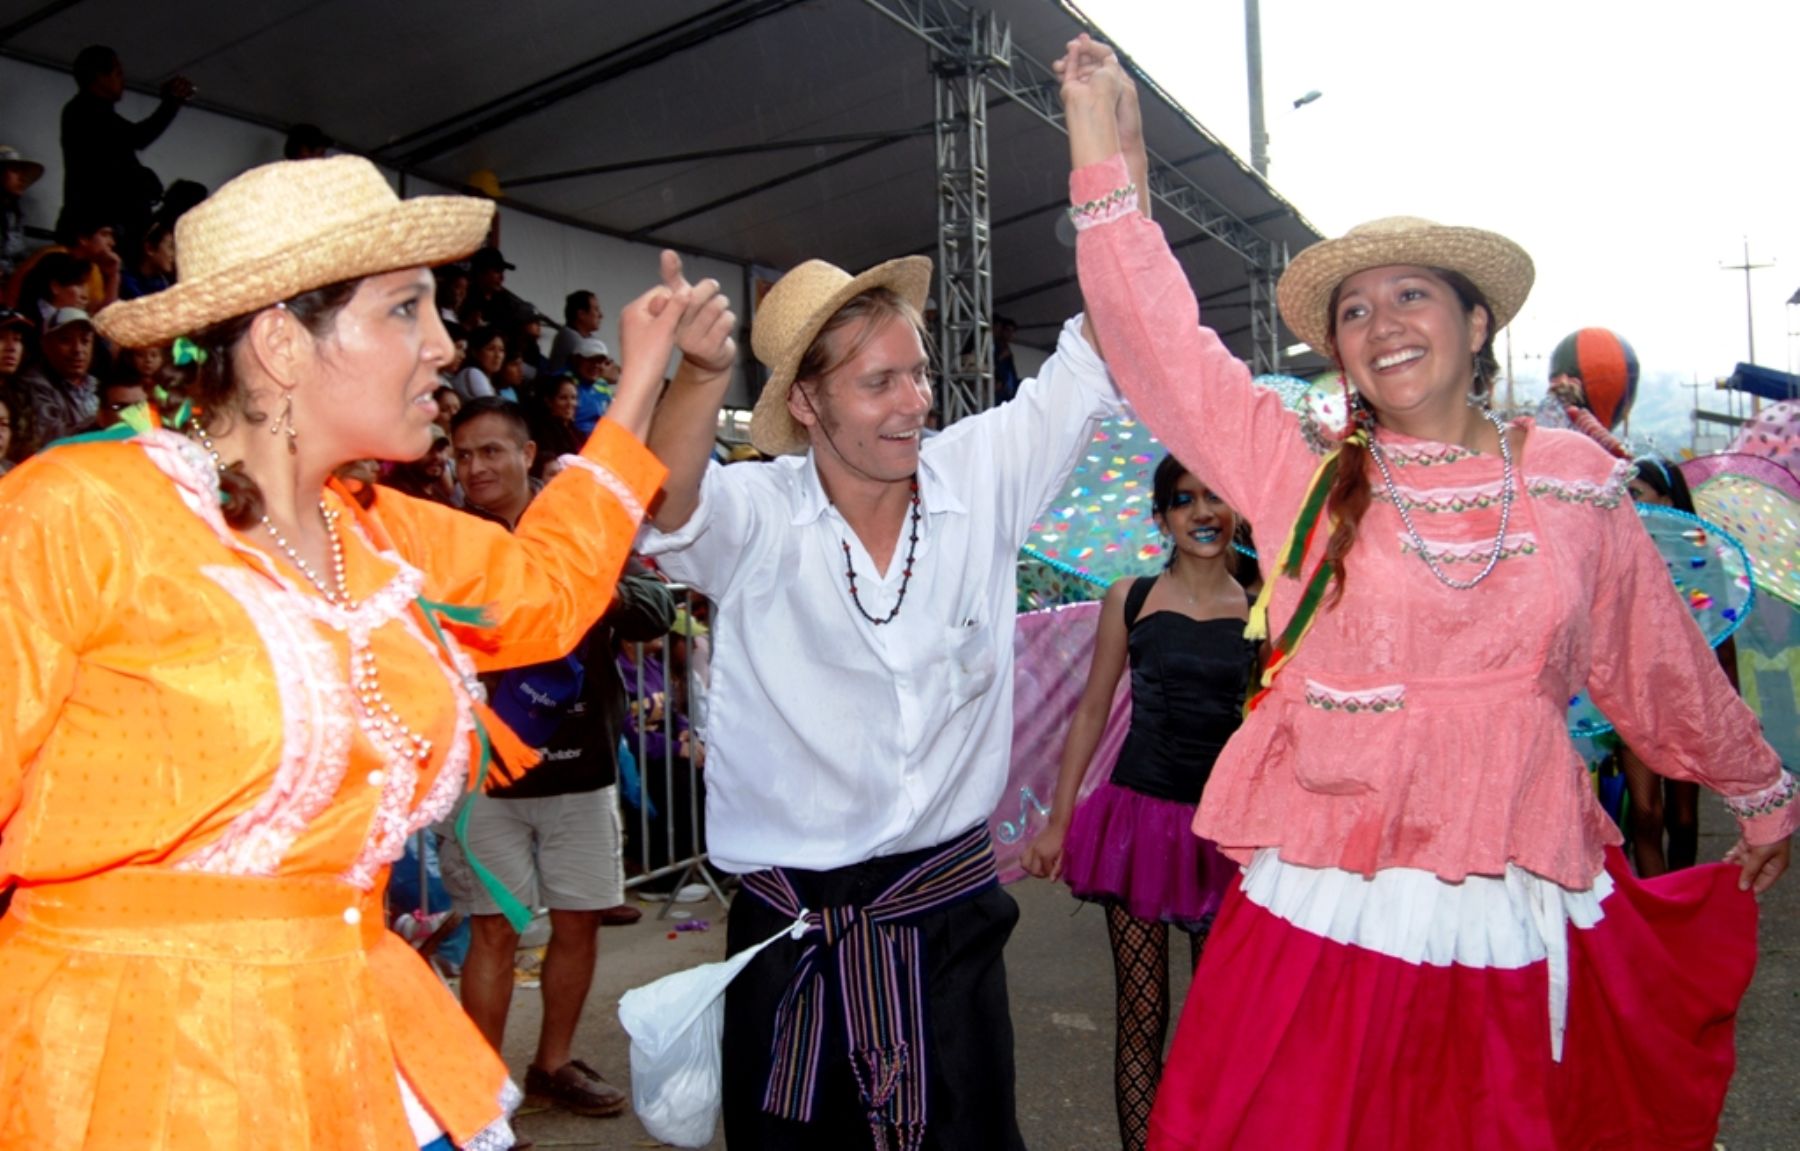 Miles de turistas arribarán a Cajamarca para participar de las celebraciones del tradicional Carnaval. ANDINA/archivo